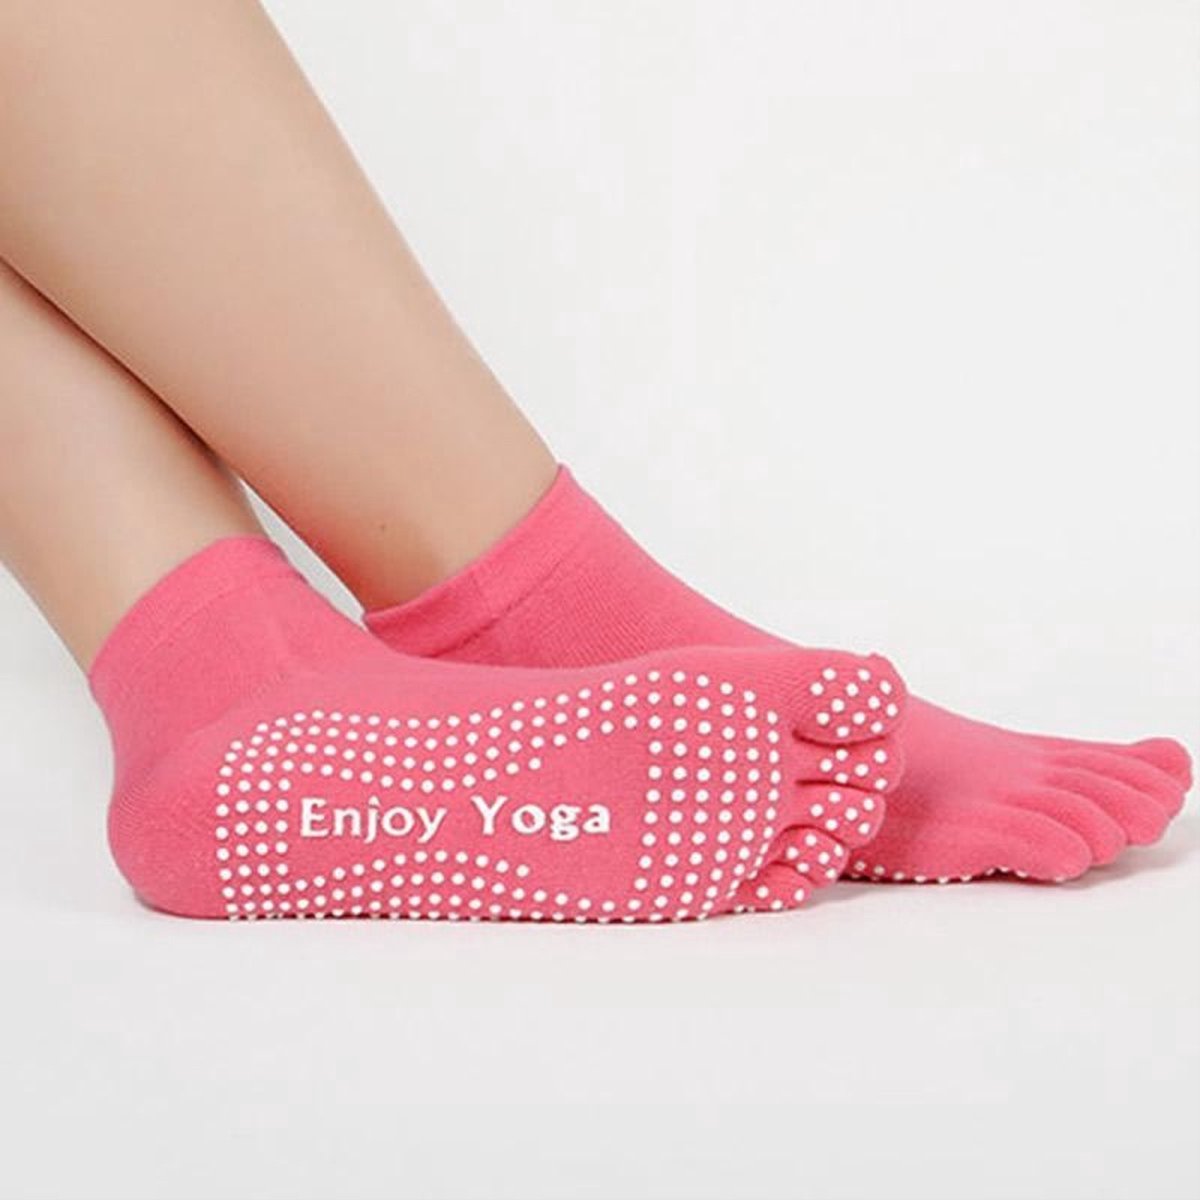 CHPN - Yogasokken - Sportsokken - Yoga - Antislip - Roze sokken - Vrolijke gekleurde sokken - Sokken - Yogasok - Teensokken - 36-40 - Danssokken